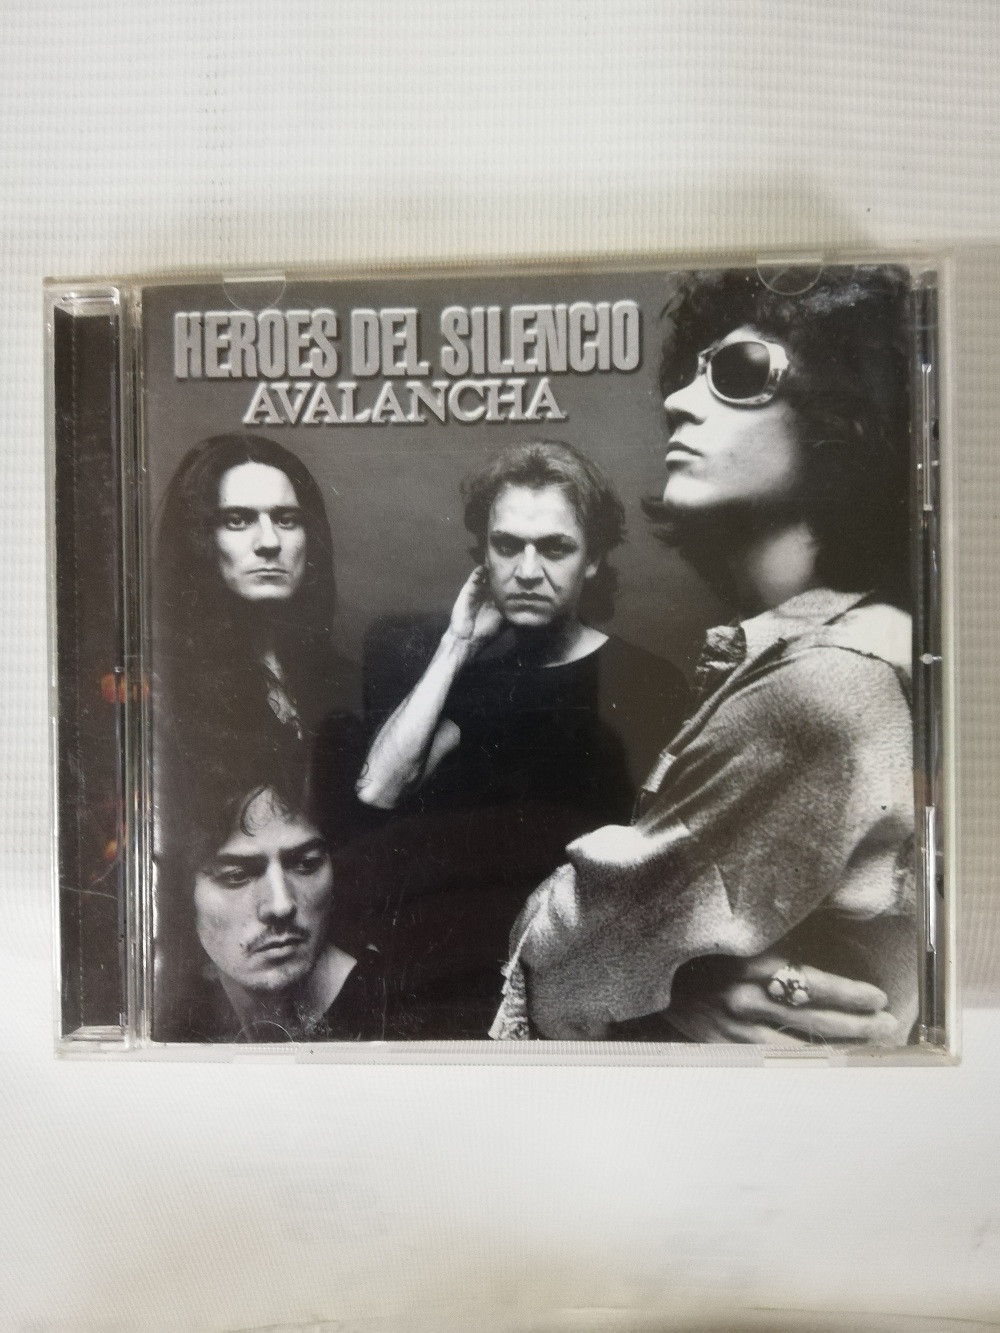 Imagen CD HEROES DEL SILENCIO - AVALANCHA